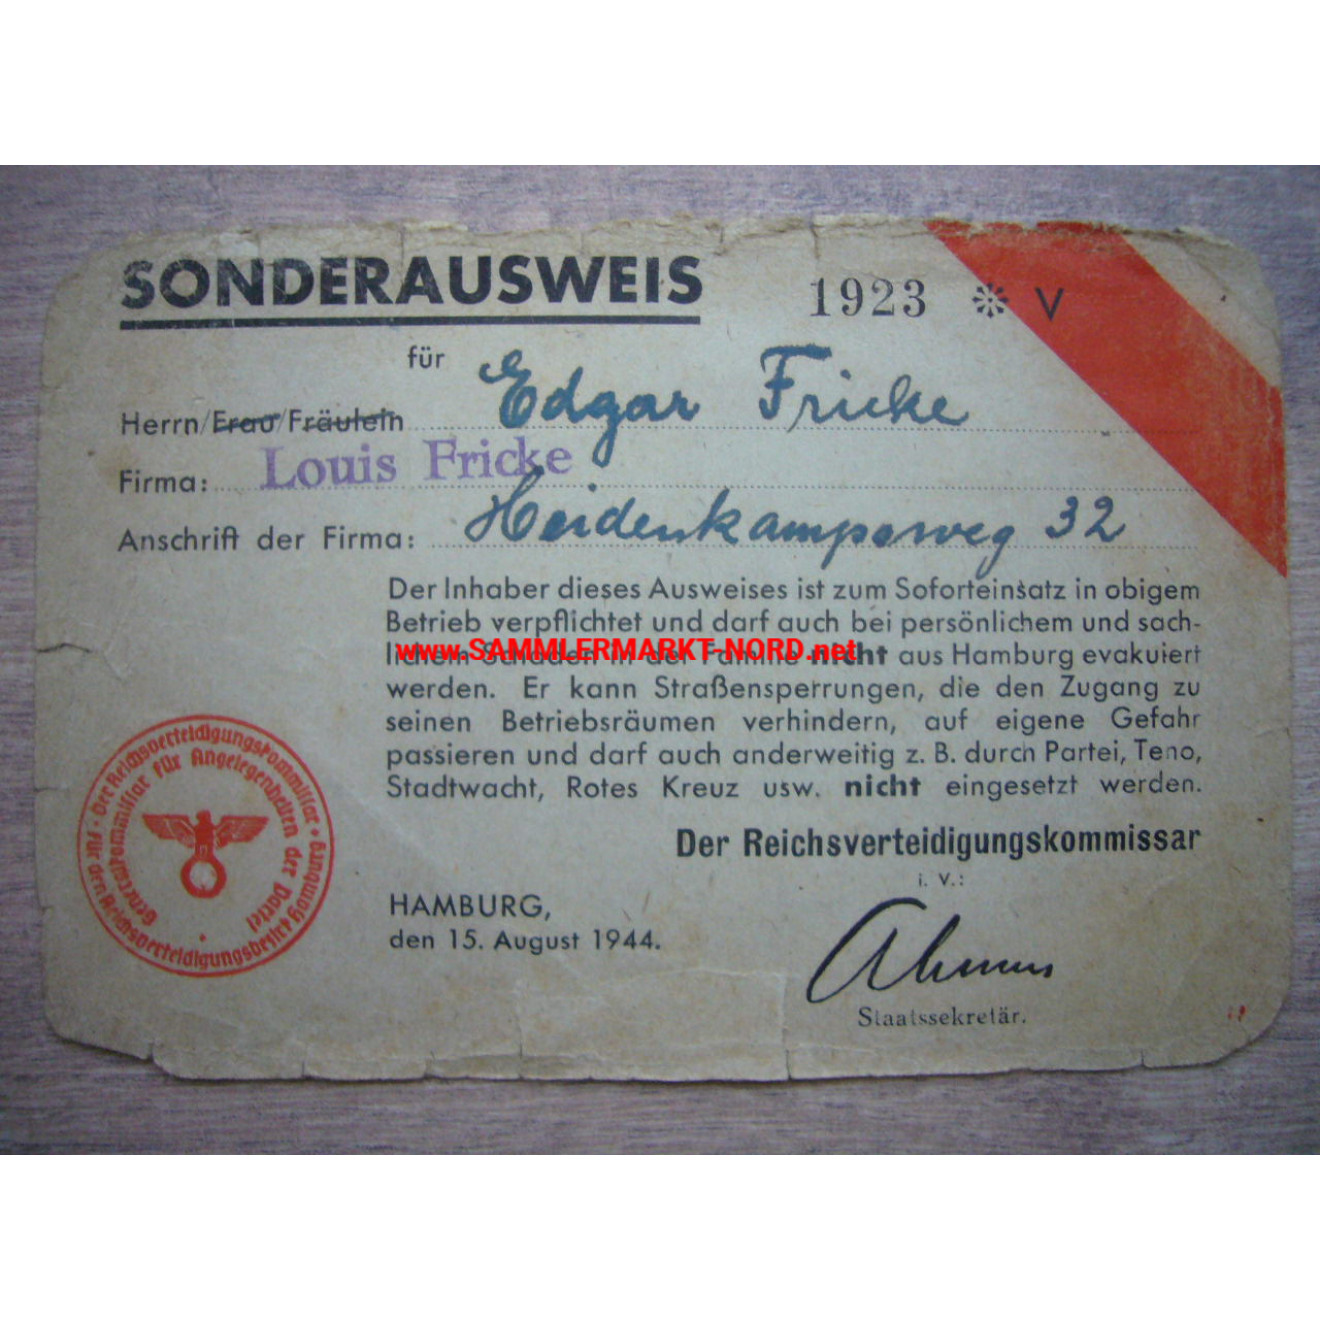 Sonderausweis - Reichsverteidigungskommissar - Hamburg 1944